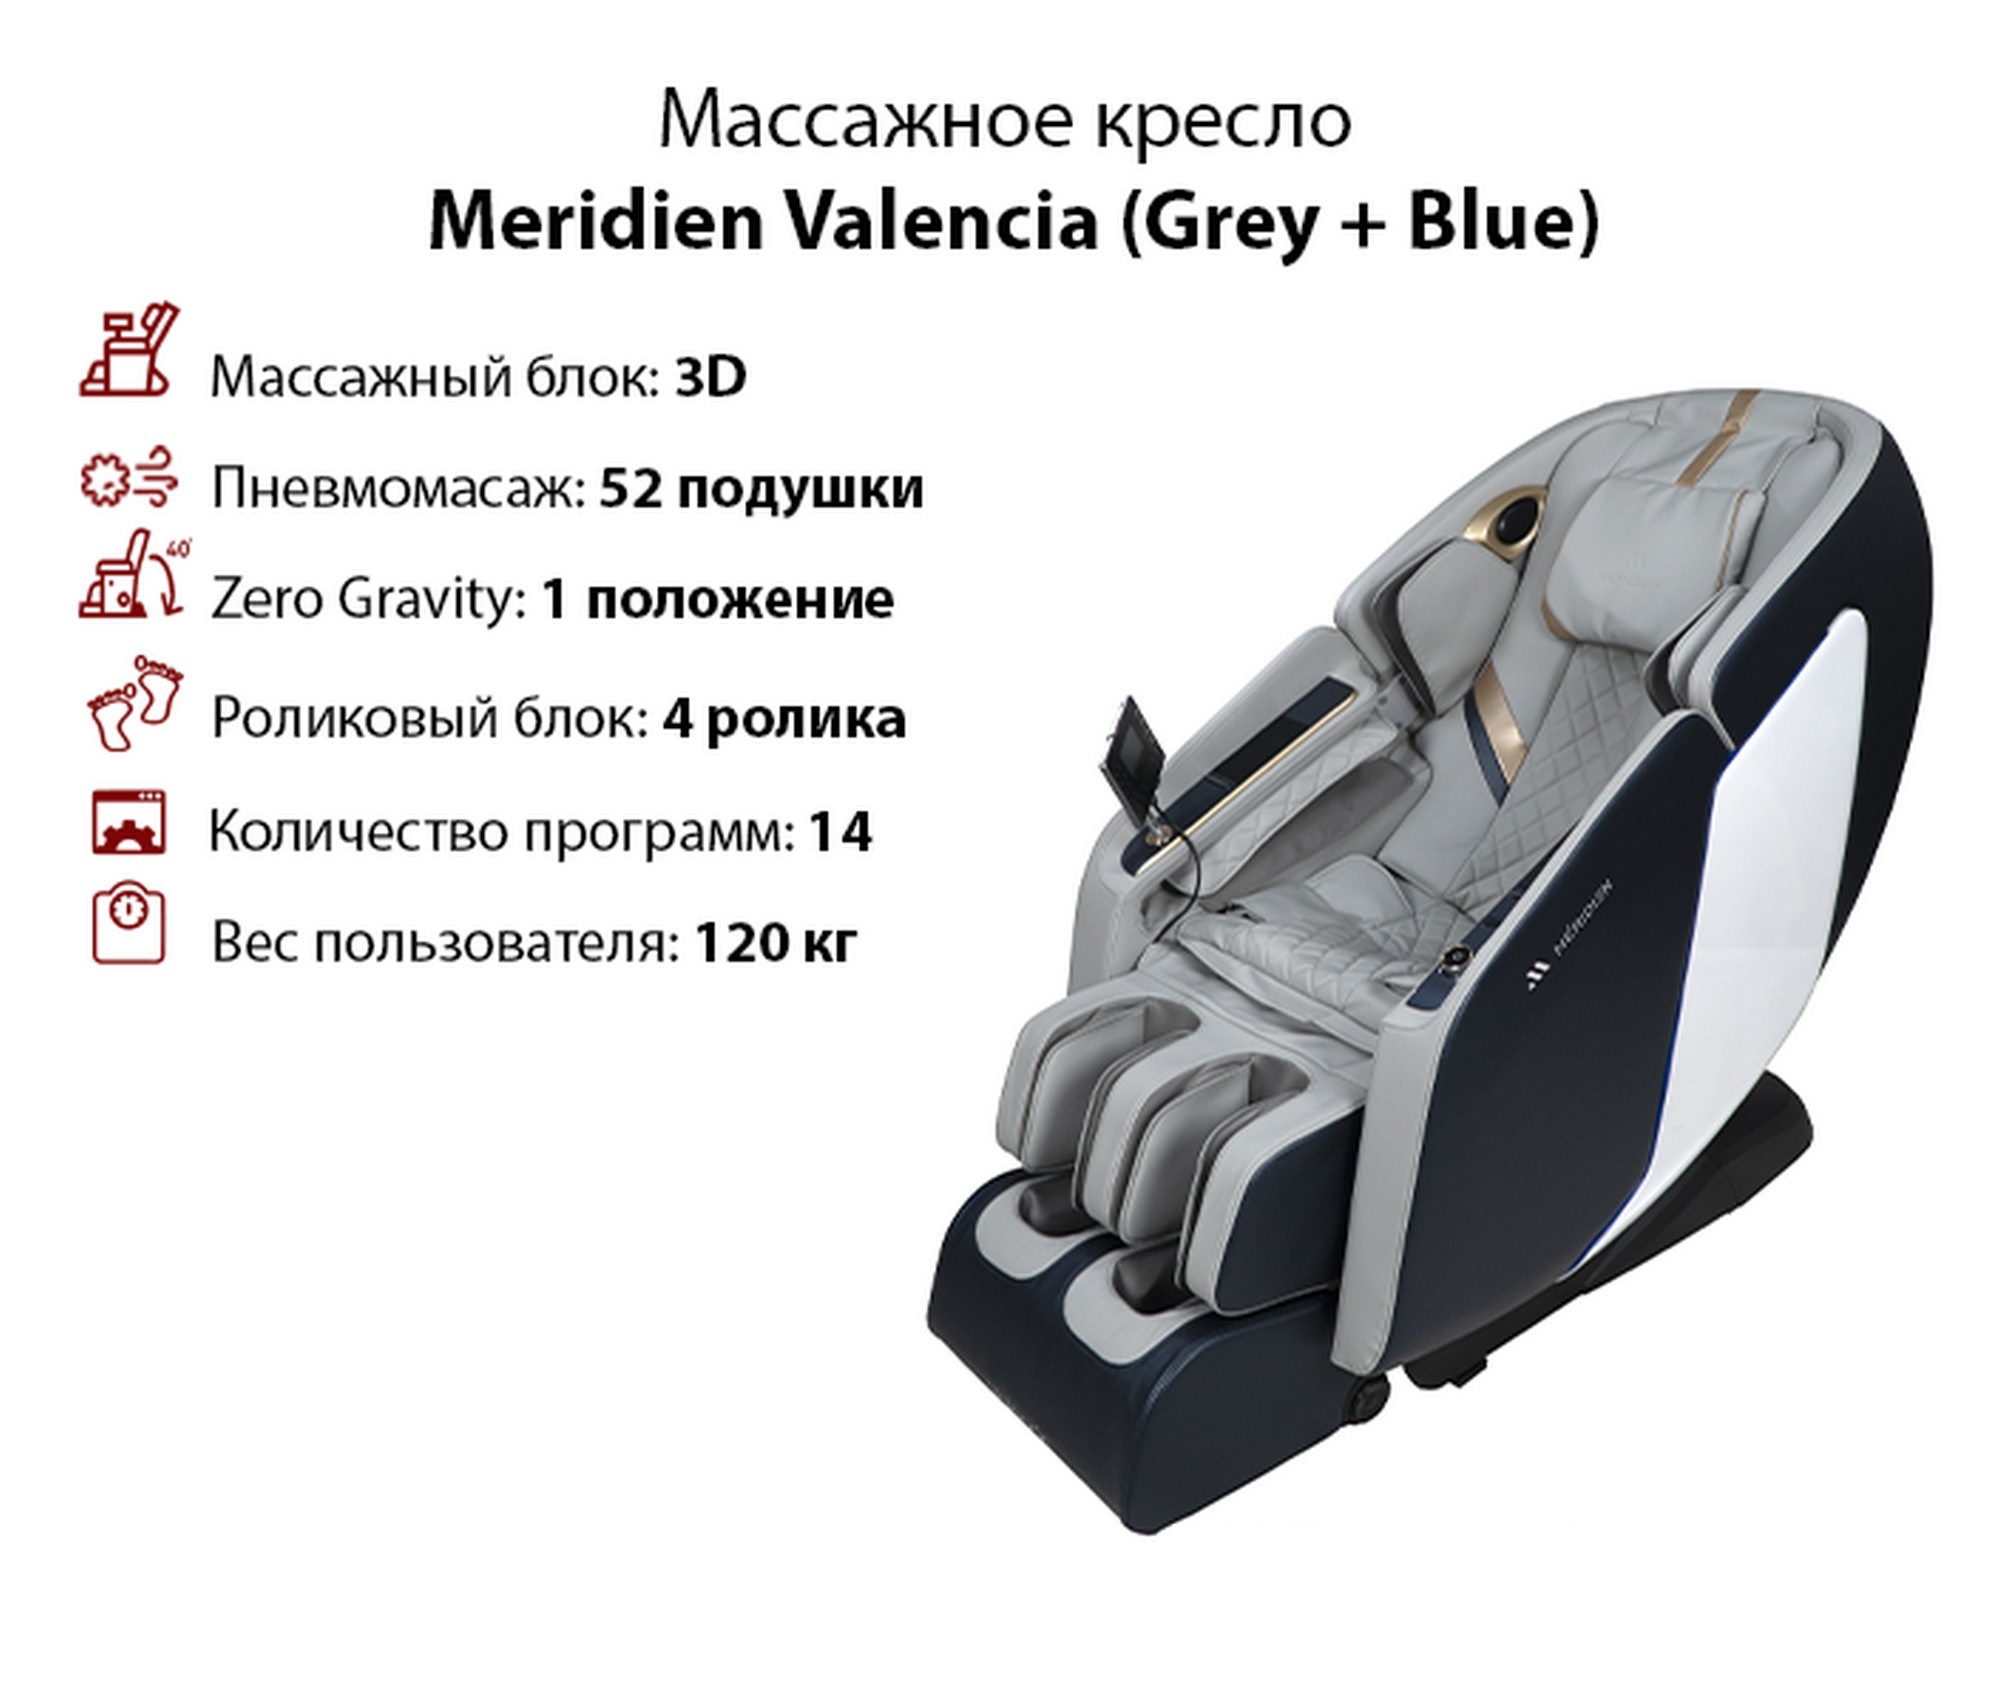 Массажное кресло Meridien Valencia Grey + Blue 2000_1702